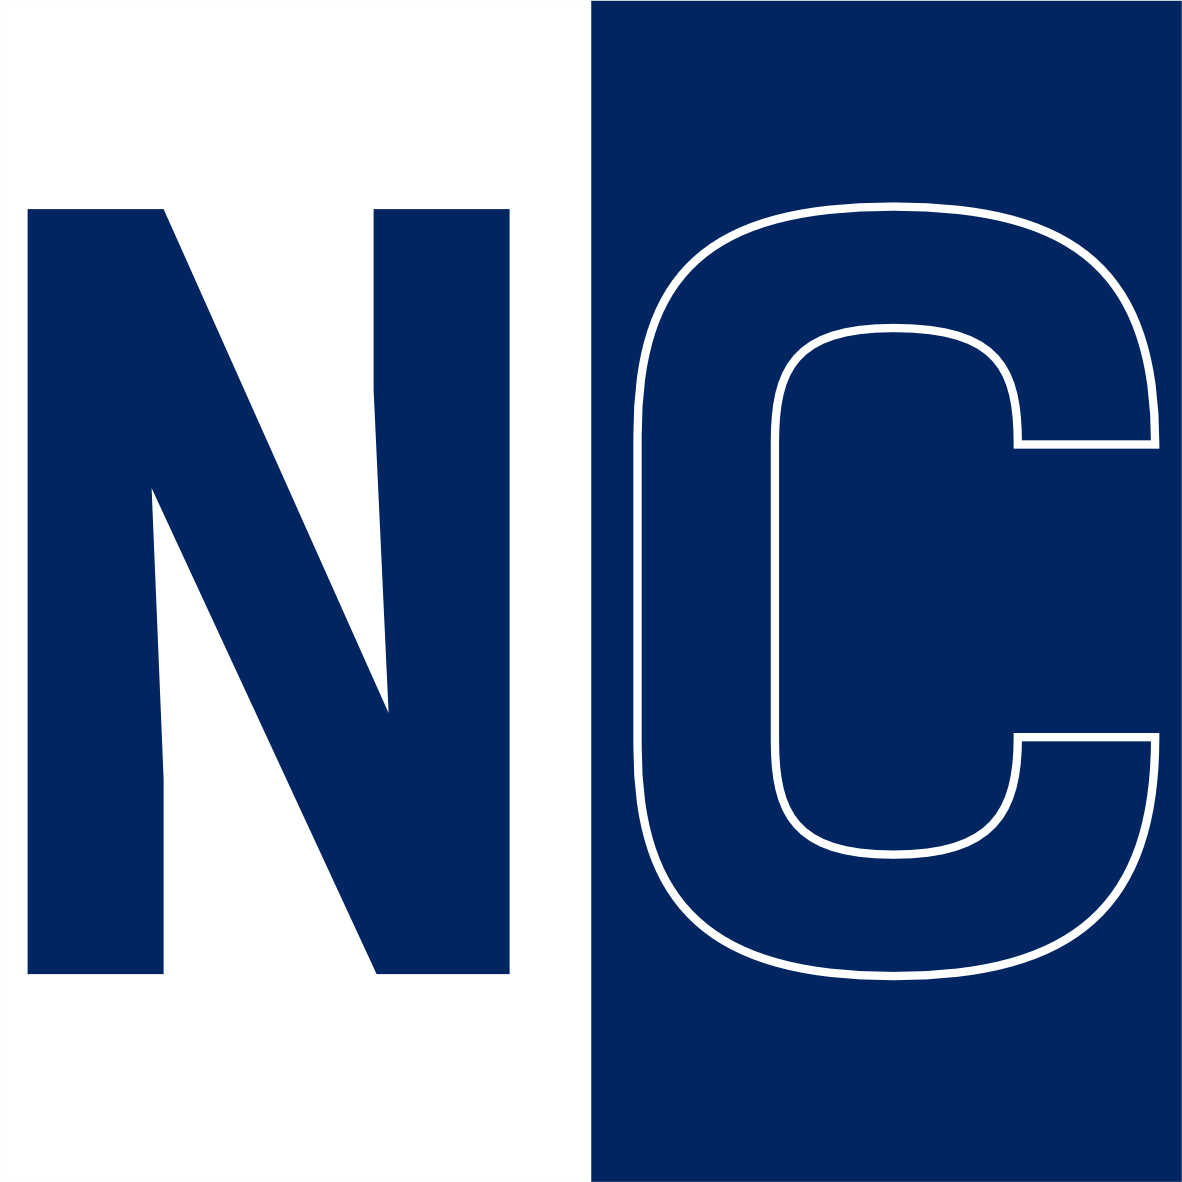 North Carolina State Wolfpack logo | FREE PNG Logos